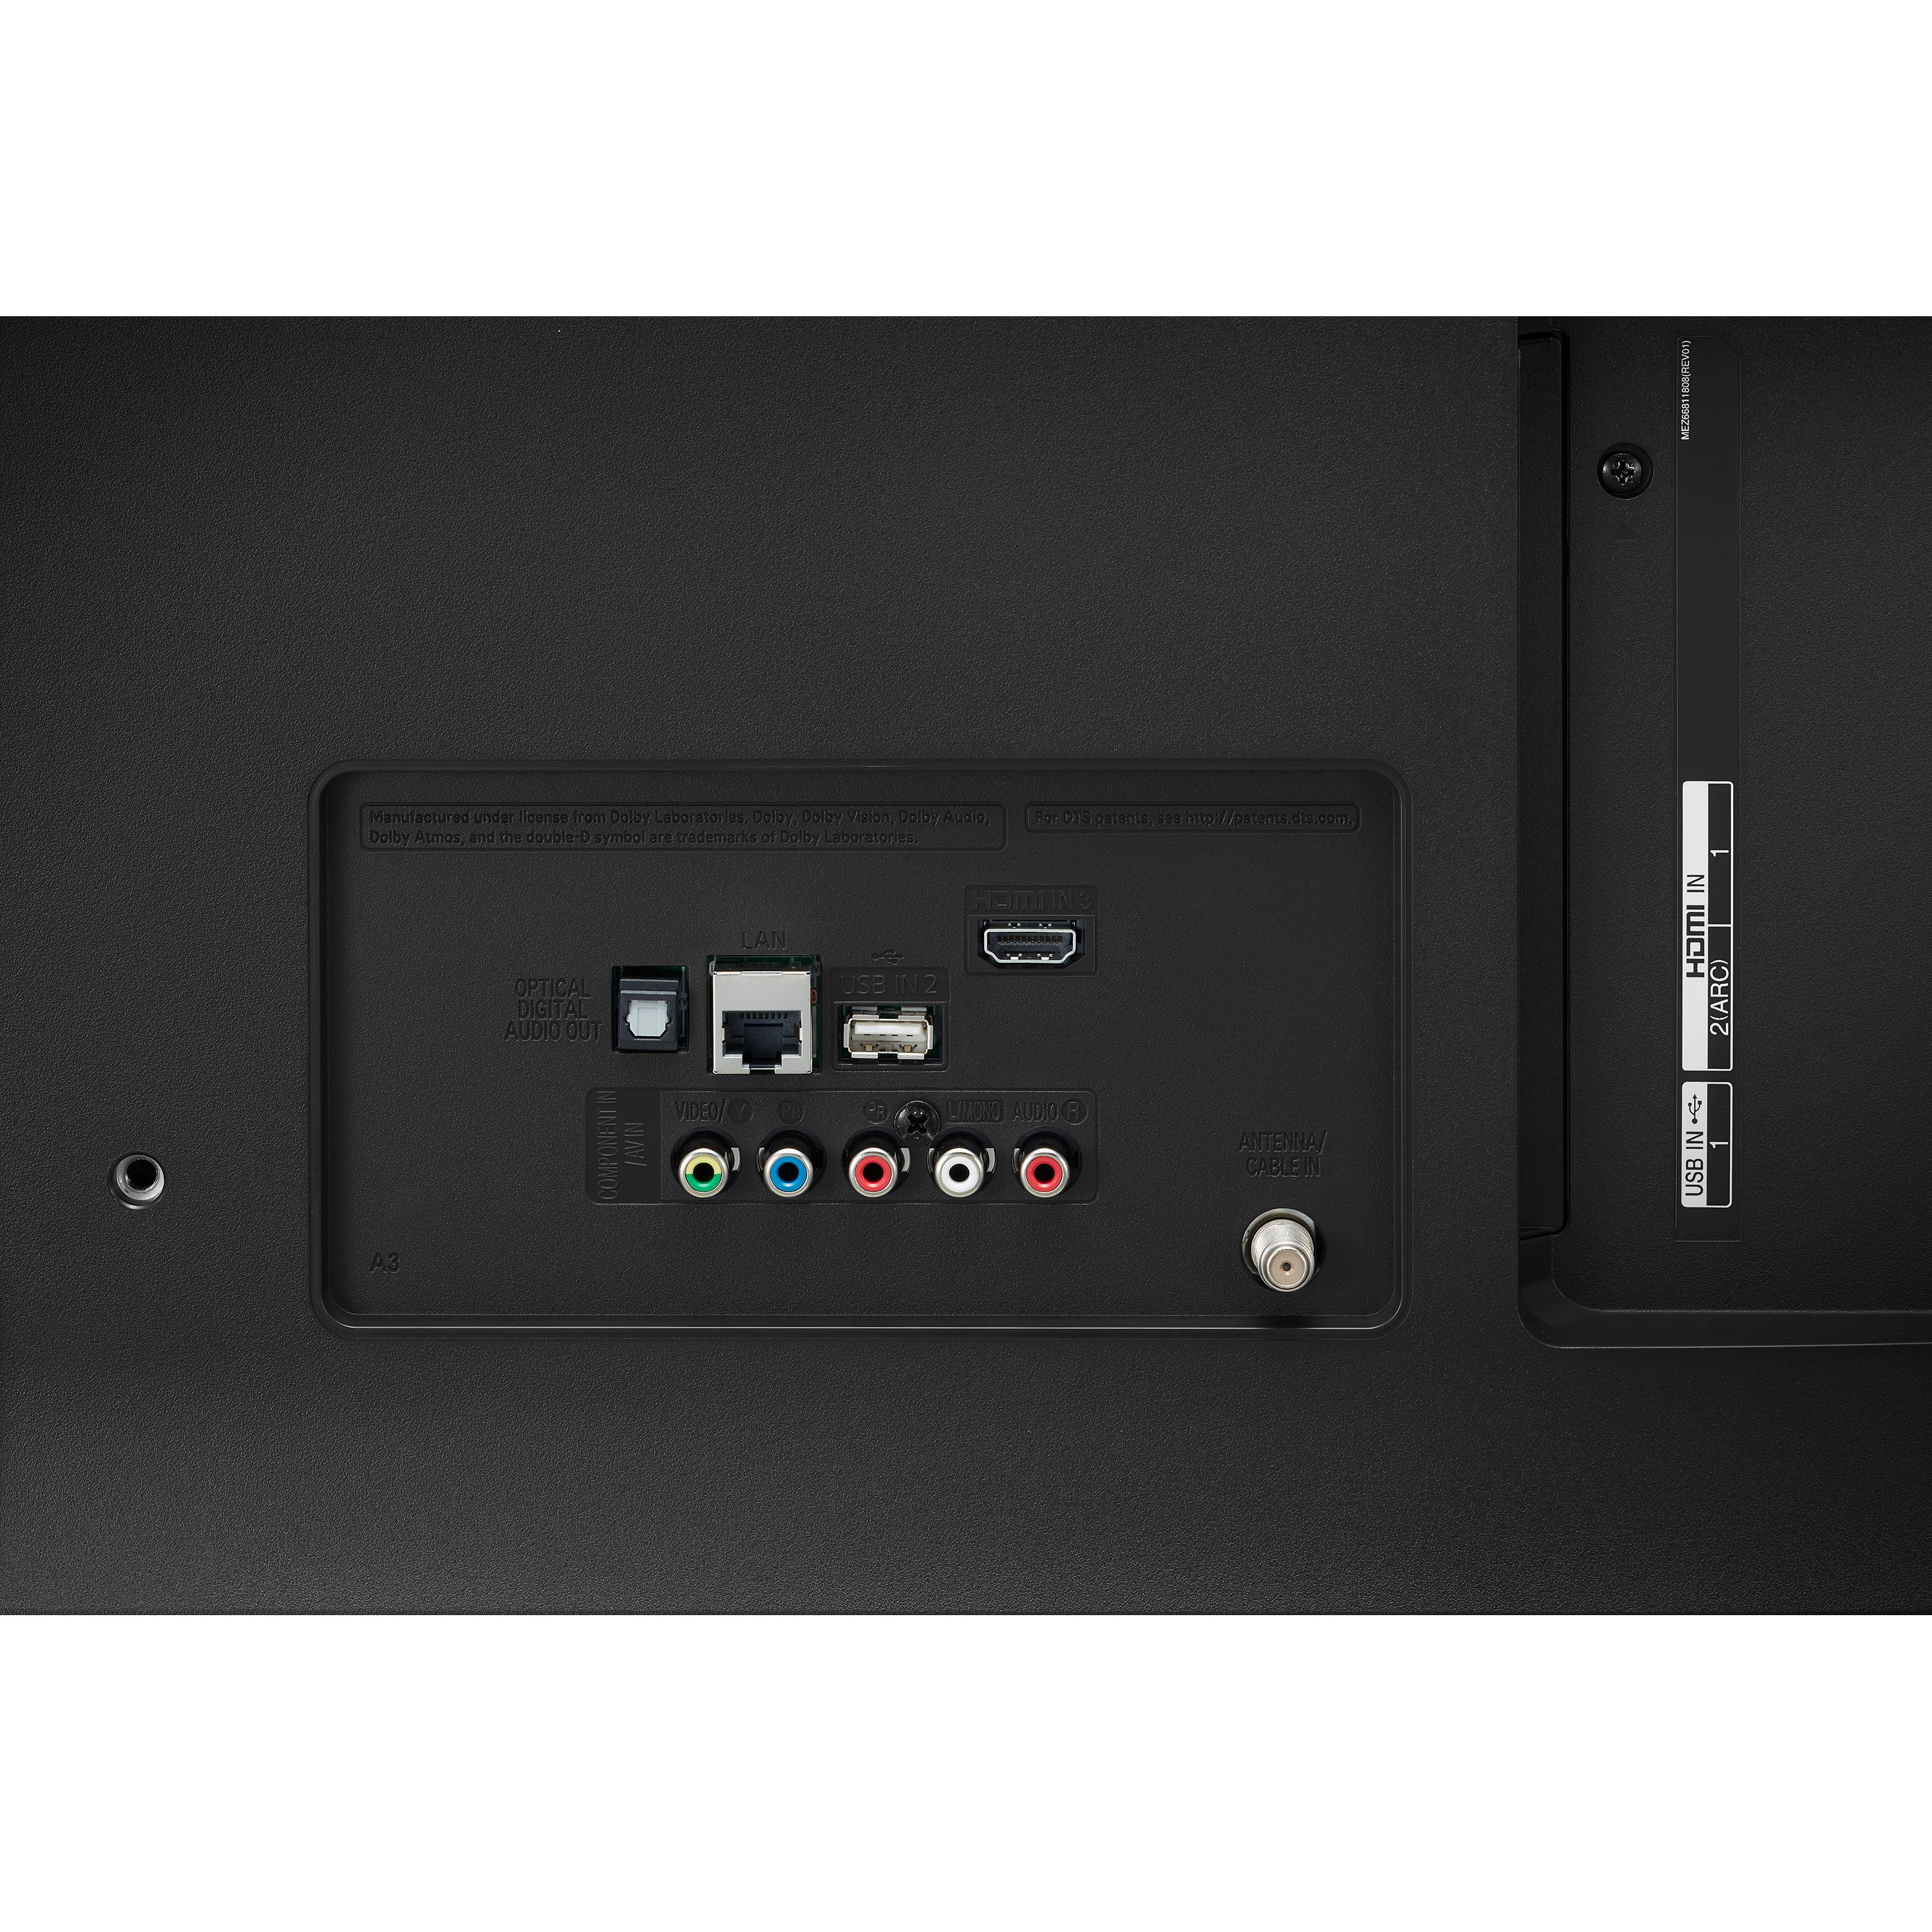  LG 60UM6900 - Paquete de televisor LED inteligente HDR 4K UHD  de 60 pulgadas con kit de montaje en pared plana, teclado retroiluminado  inalámbrico Deco Gear y adaptador de sobretensión de